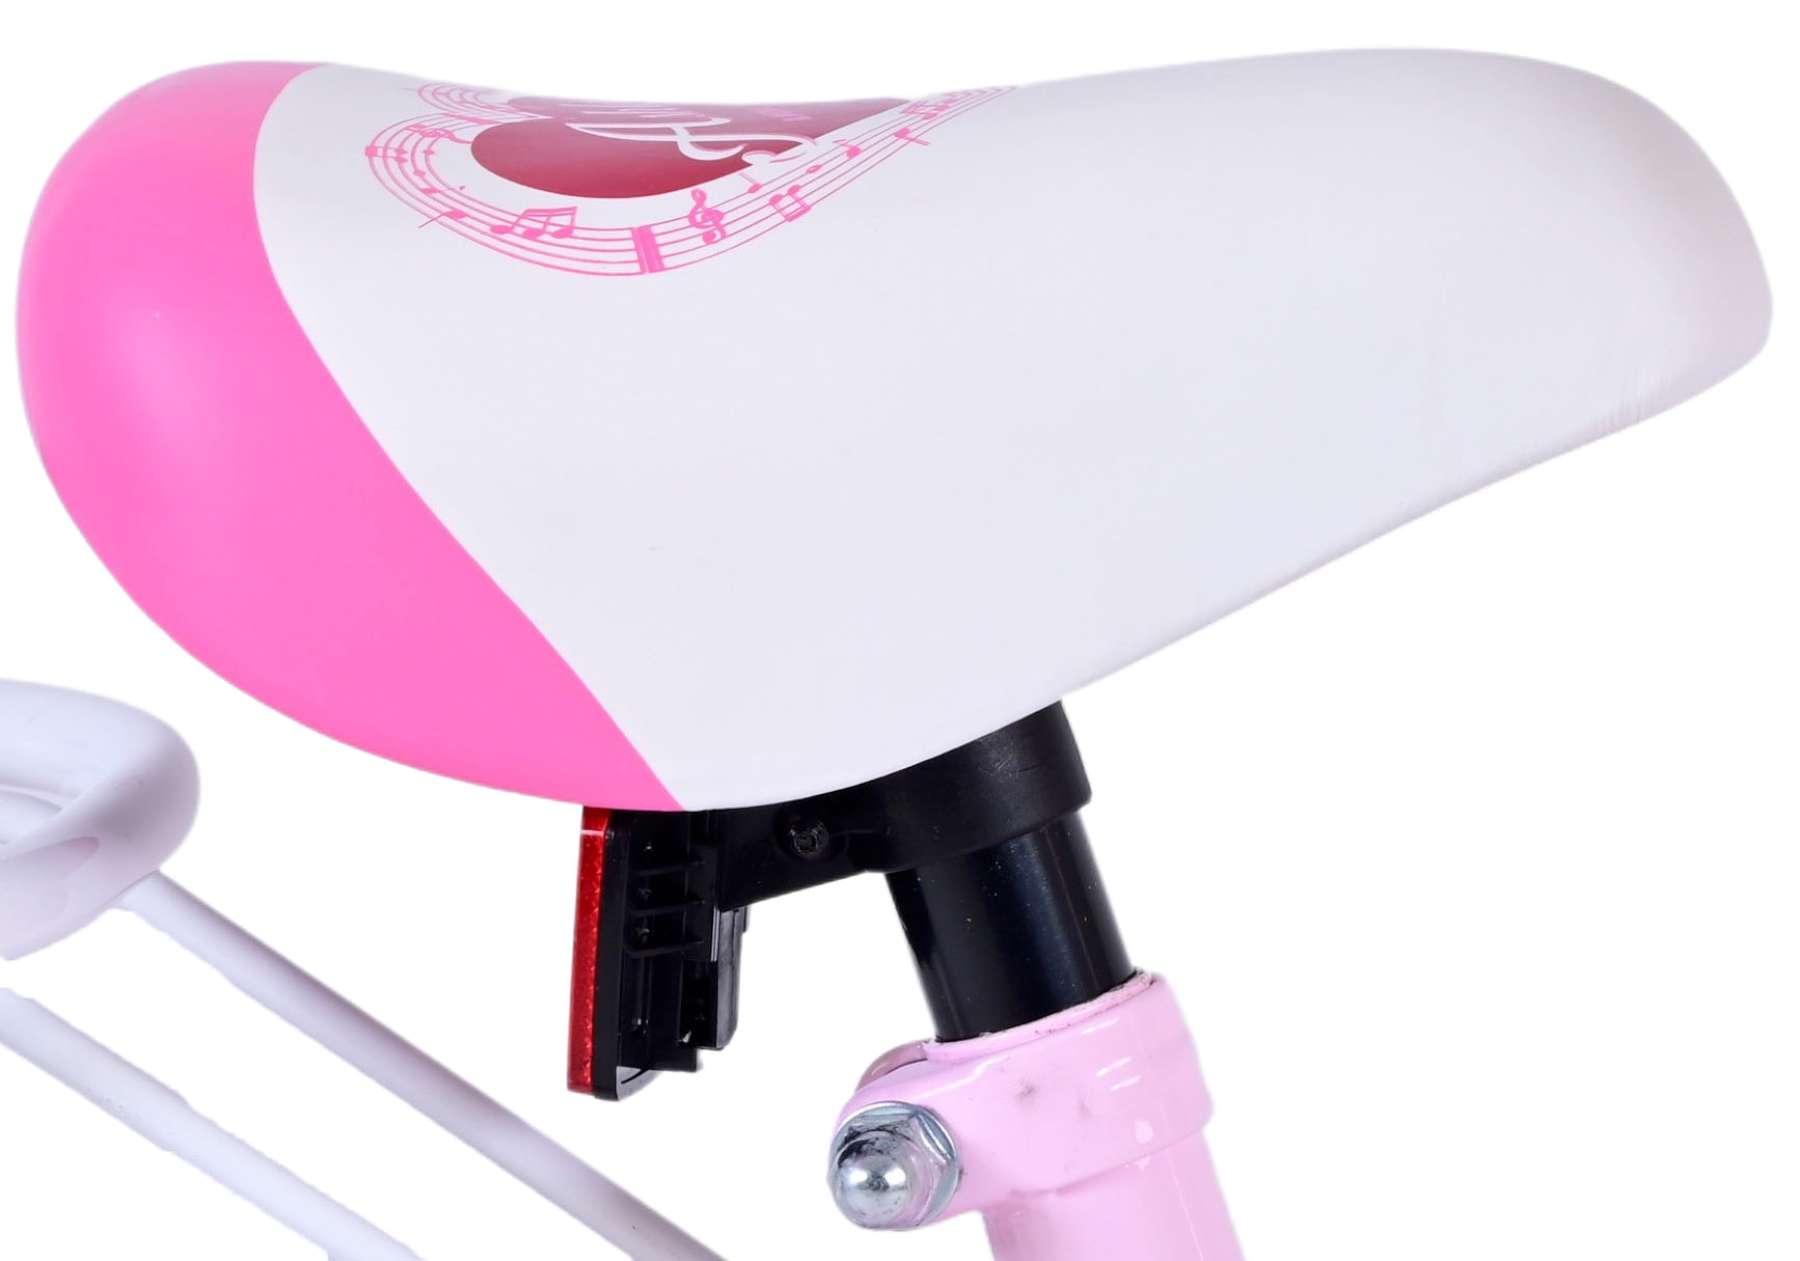 Kinderfahrrad Ashley Fahrrad für Mädchen 12 Zoll Kinderrad in Rosa